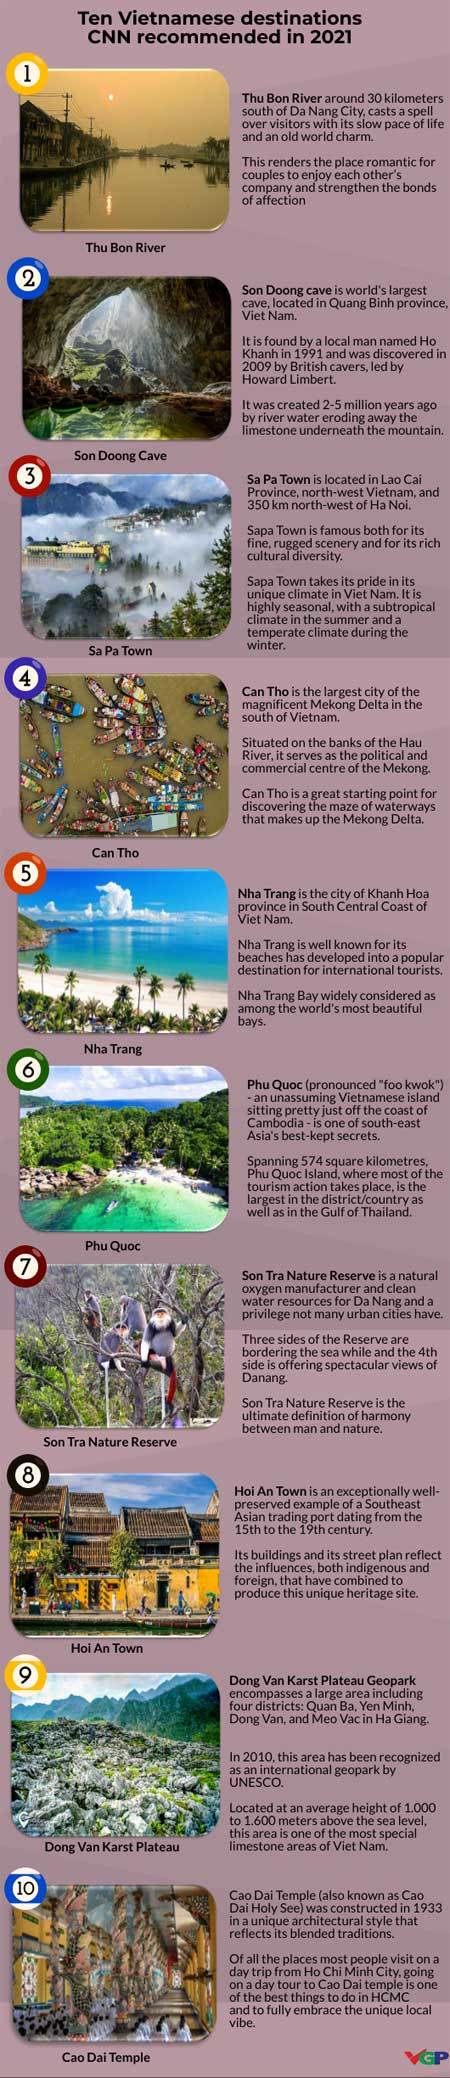 CNN selects ten Vietnamese destinations in 2021